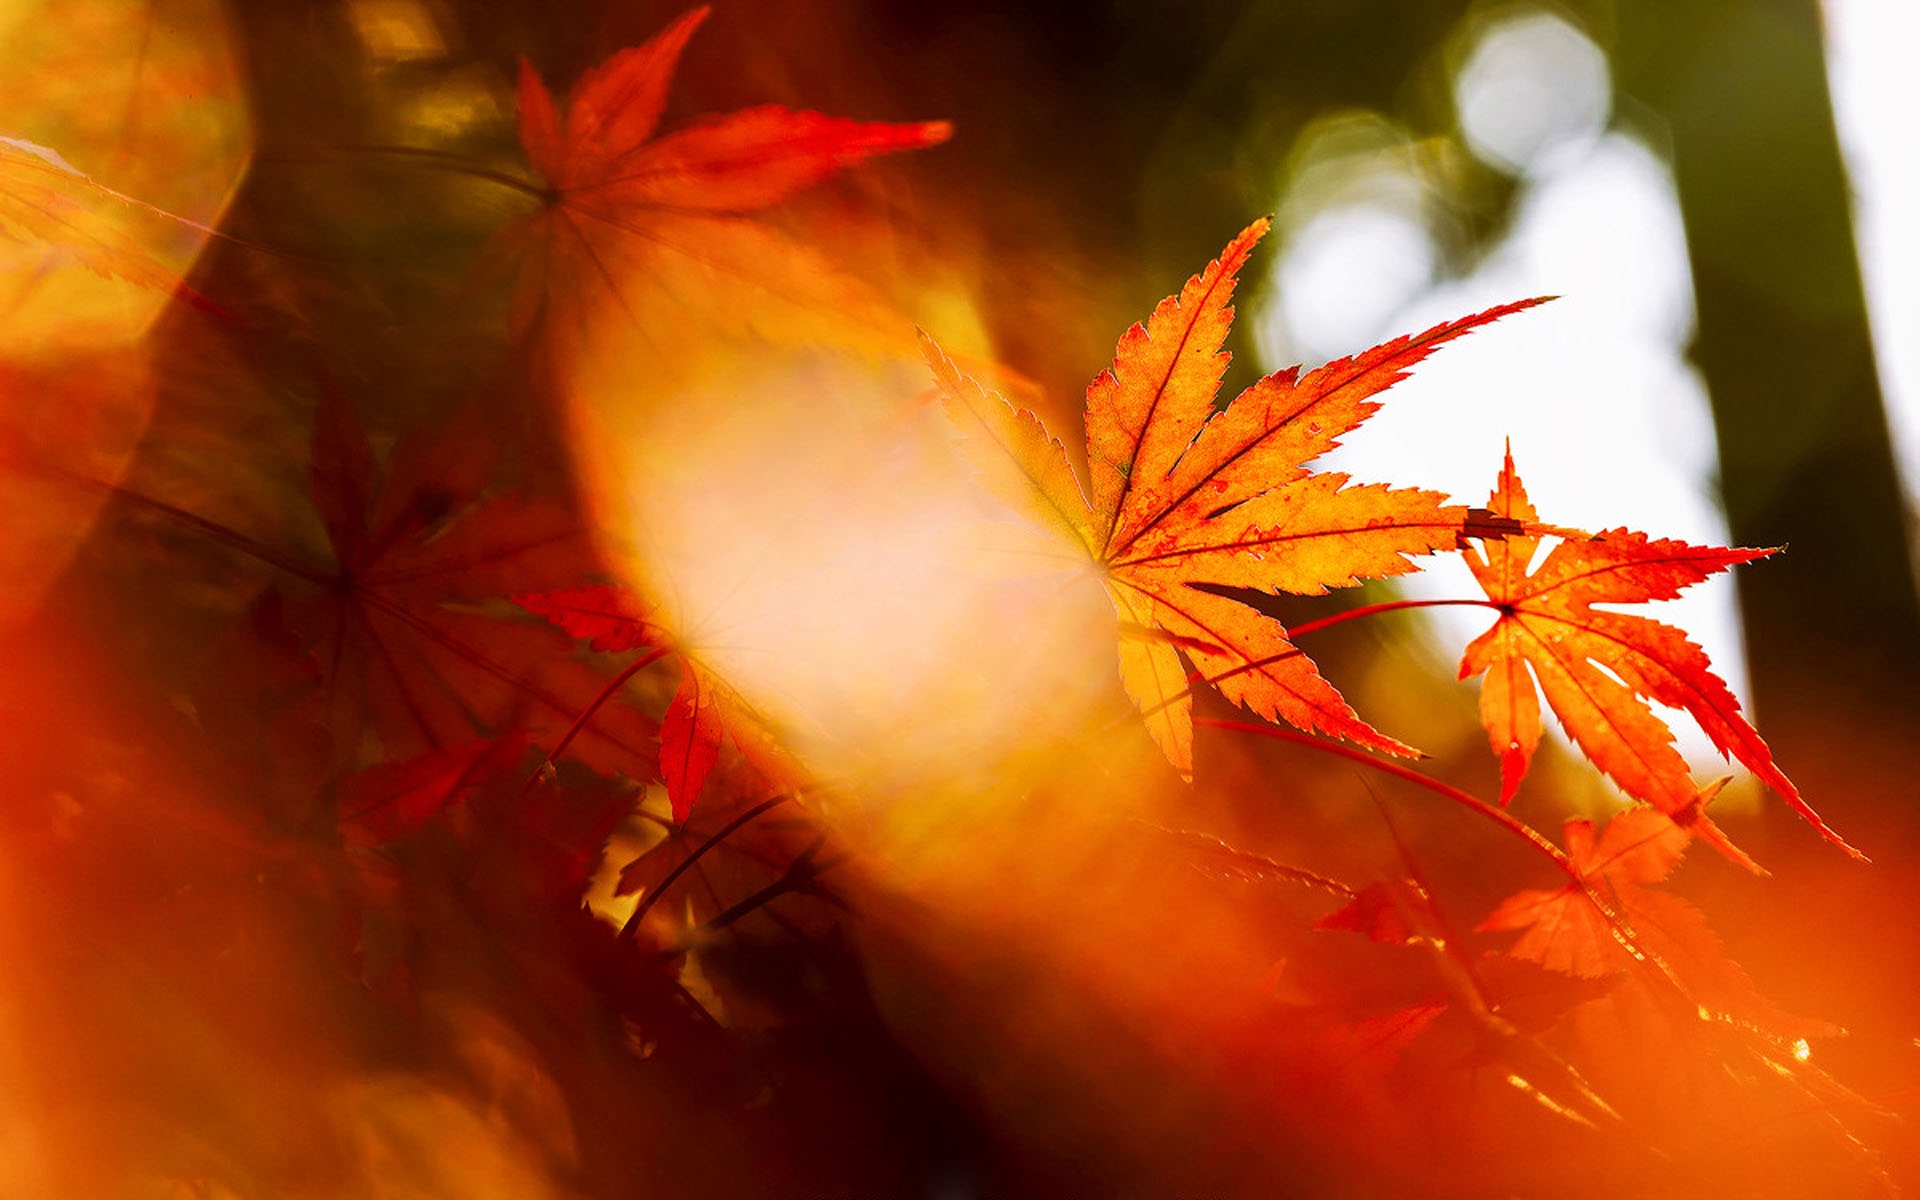 枫叶风景图片大全 唯美秋季红枫叶高清桌面壁纸(2)